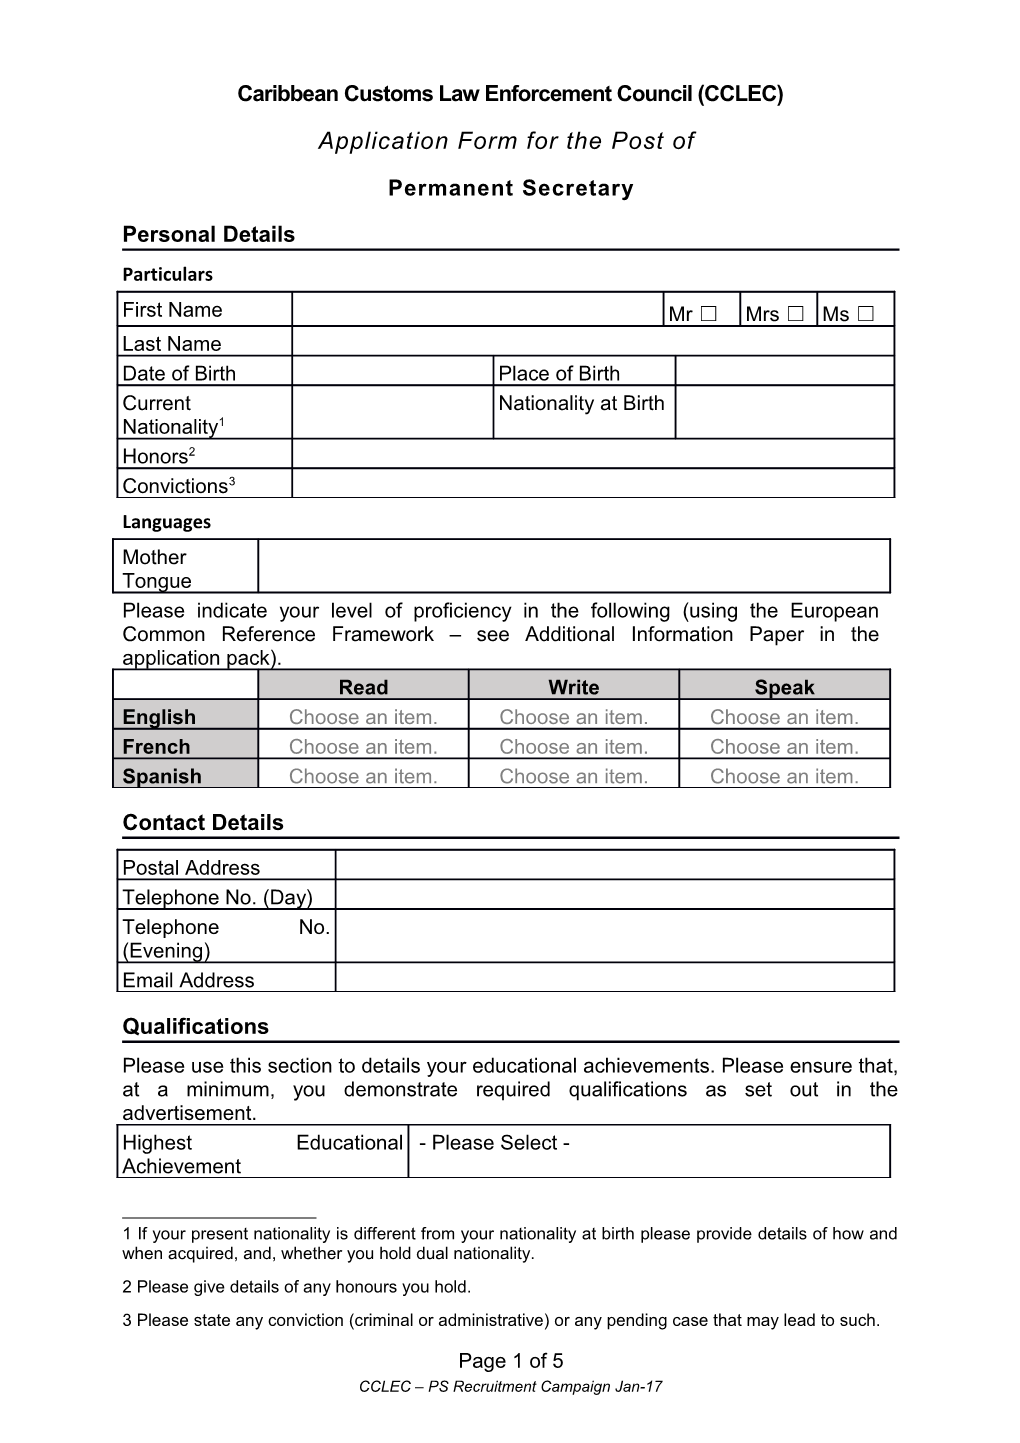 CCLEC - PS Application Form